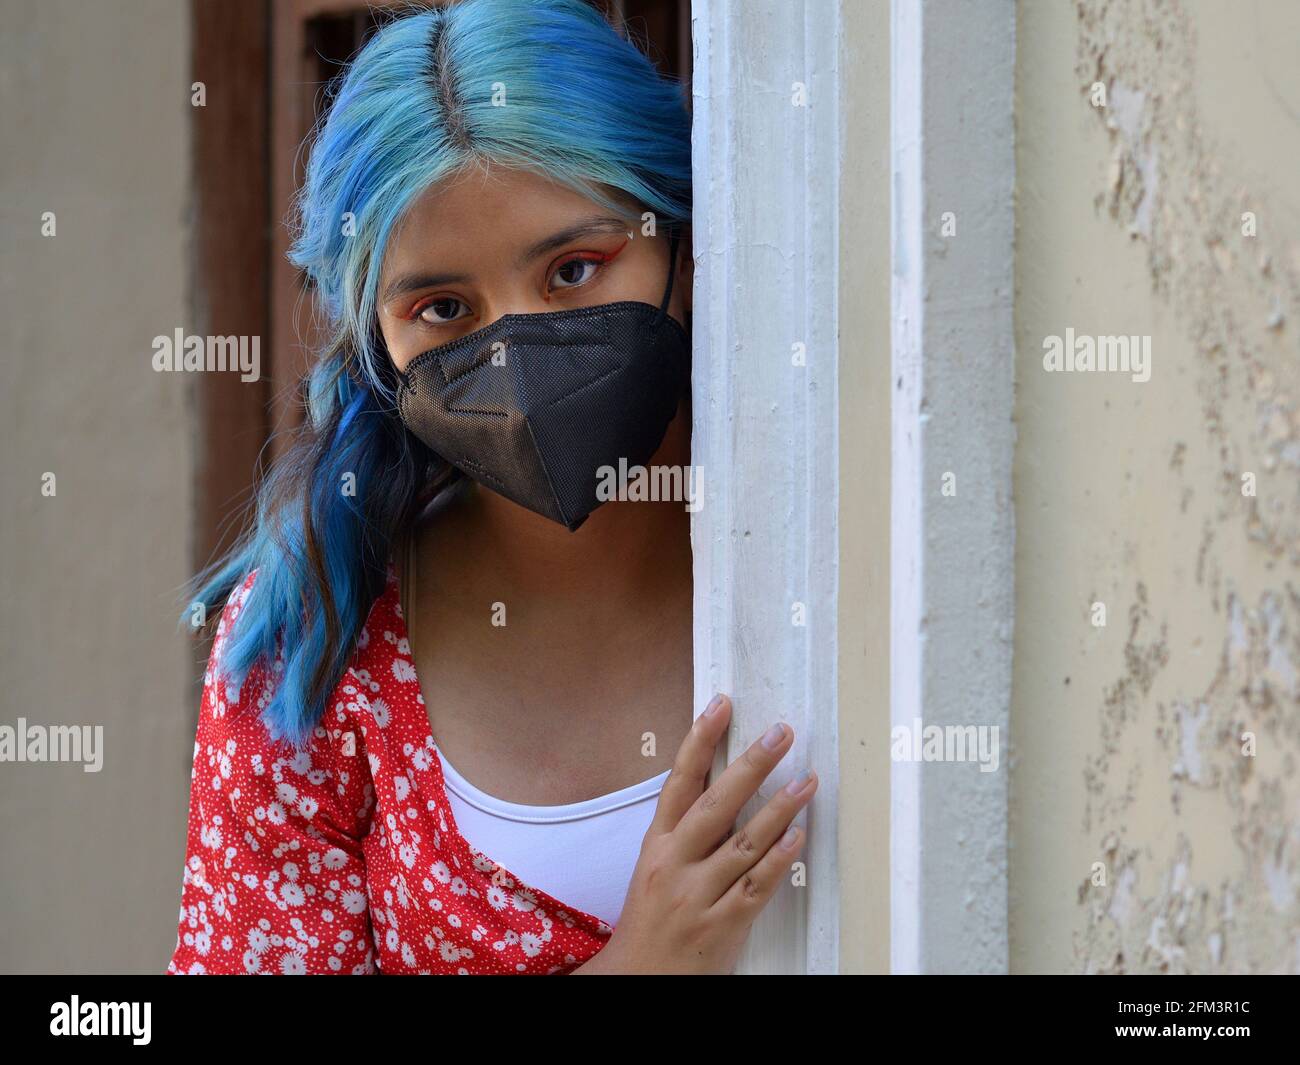 Das kaukasische Latina-Teenager-Mädchen mit blau gefärbtem langen Haar und aufwändigem Augen-Make-up trägt eine schwarze Gesichtsmaske und guckst um die Ecke einer Eingangstür. Stockfoto